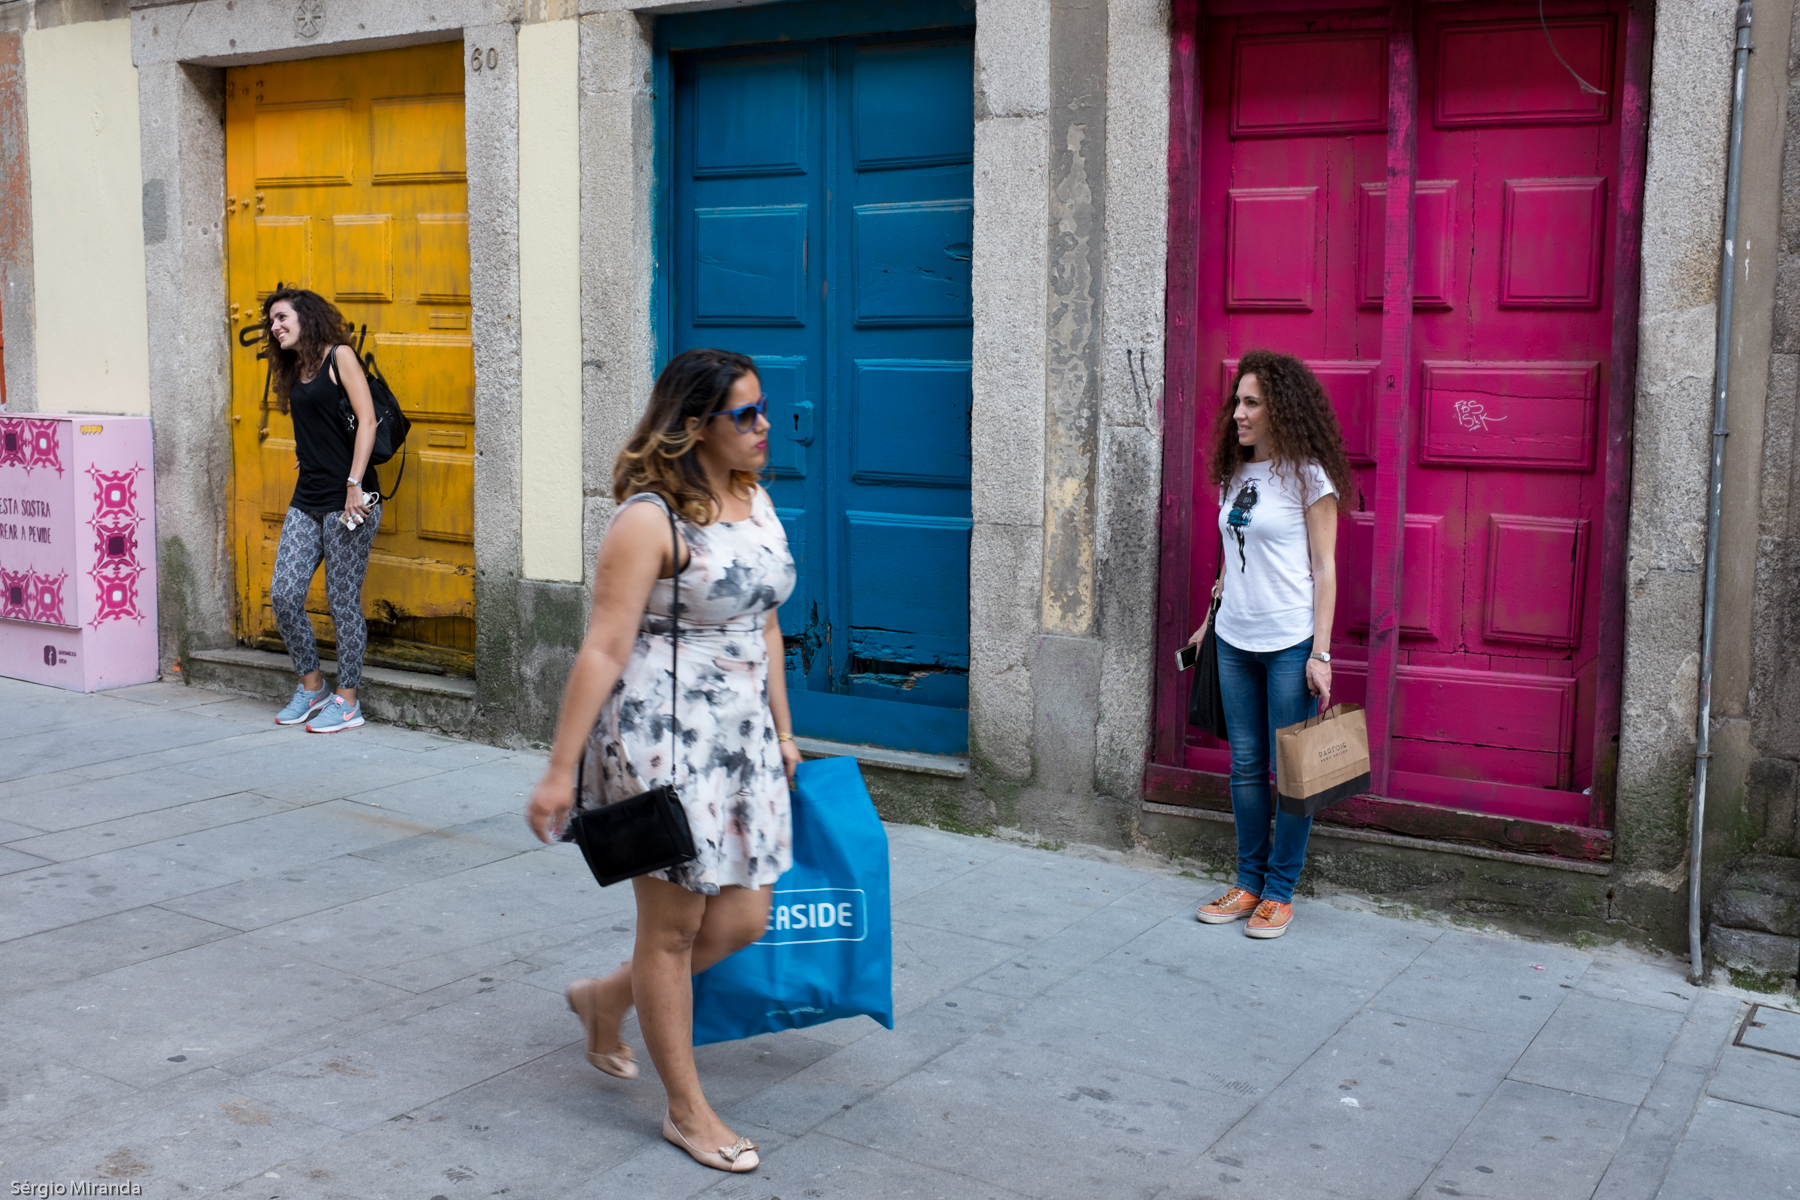 À semelhança da Rua das Flores, as caixas de eletricidade de outras ruas do Porto vão ser alvo de intervenção artística.